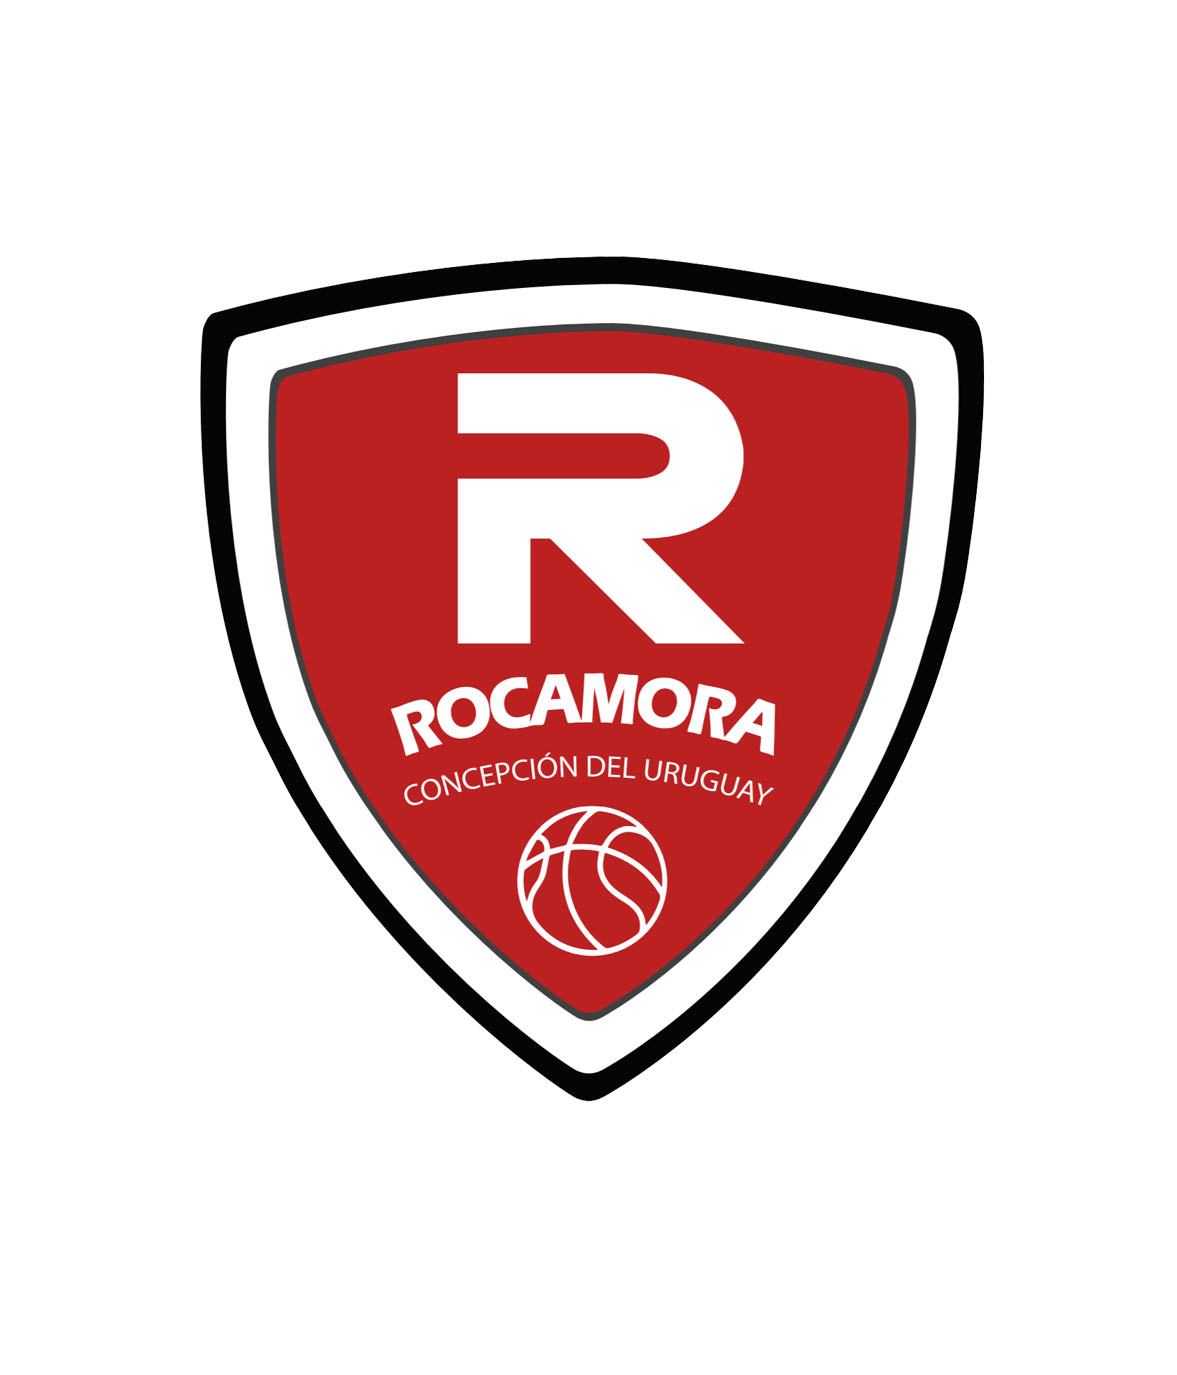 Rocamora (C. del Uruguay)